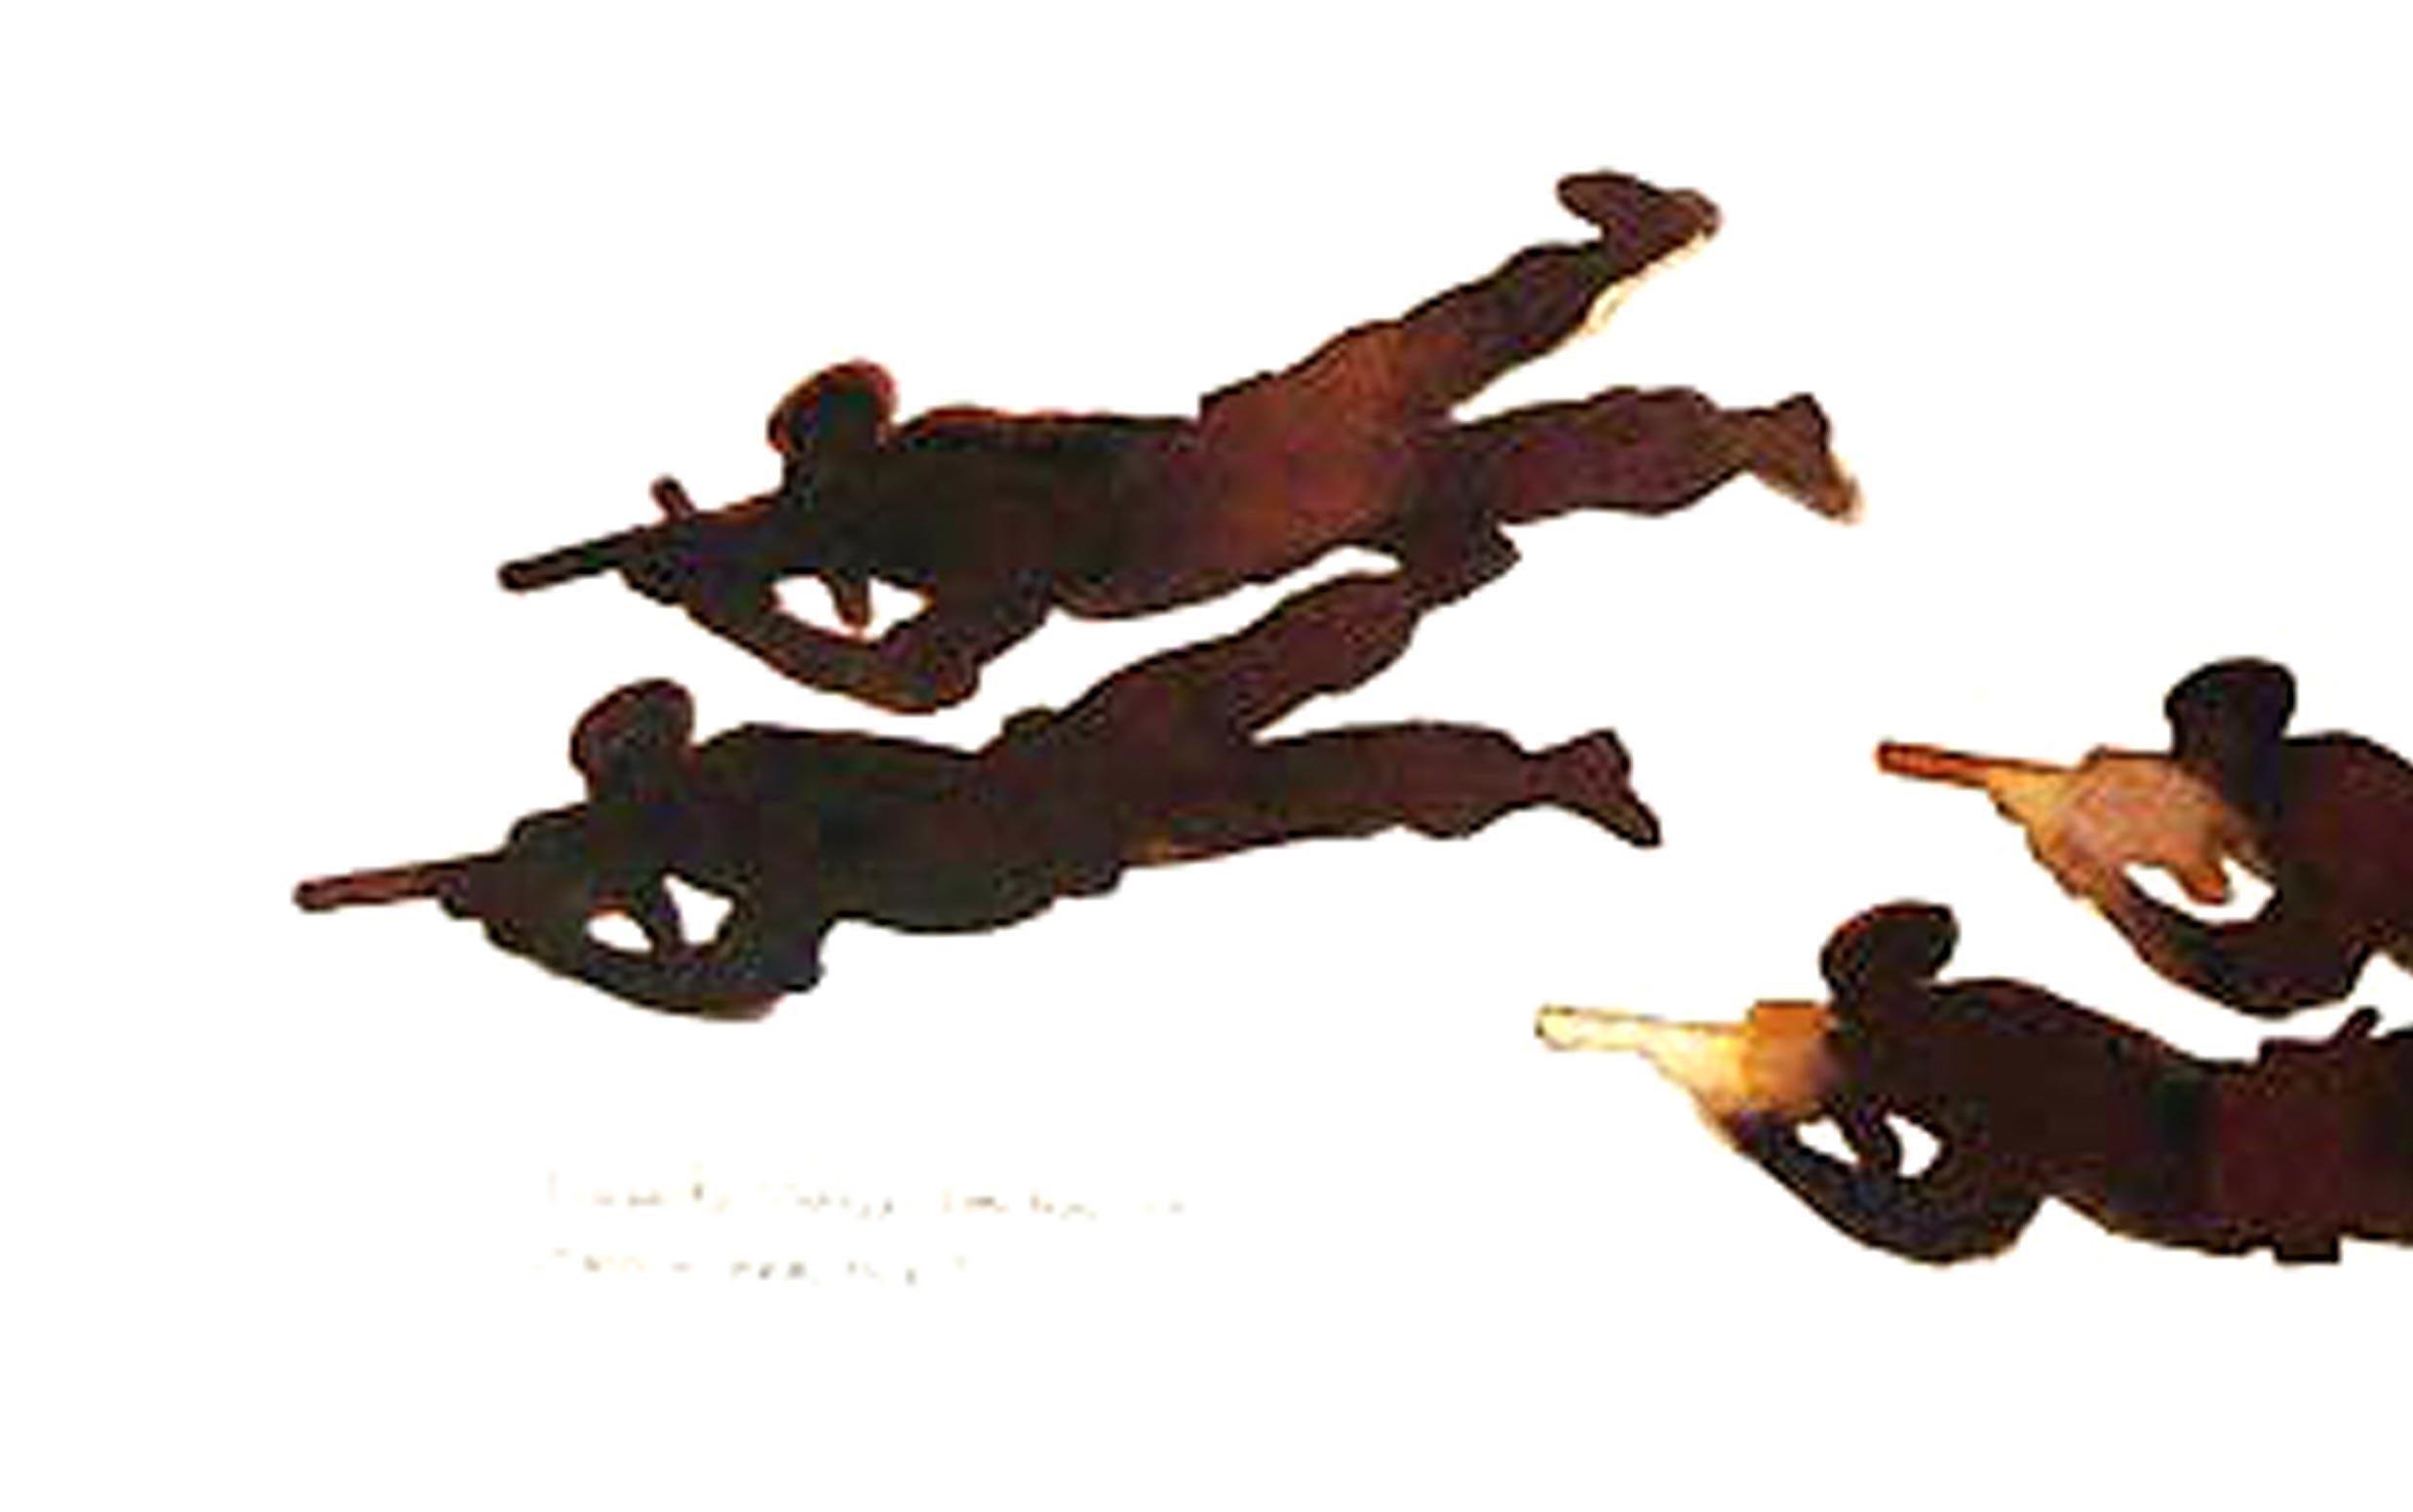 Mock Practice, Männer beim Shooting, Braun, Sepiafarbe, Aquarell auf Papier (Zeitgenössisch), Painting, von Prasanta Sahu